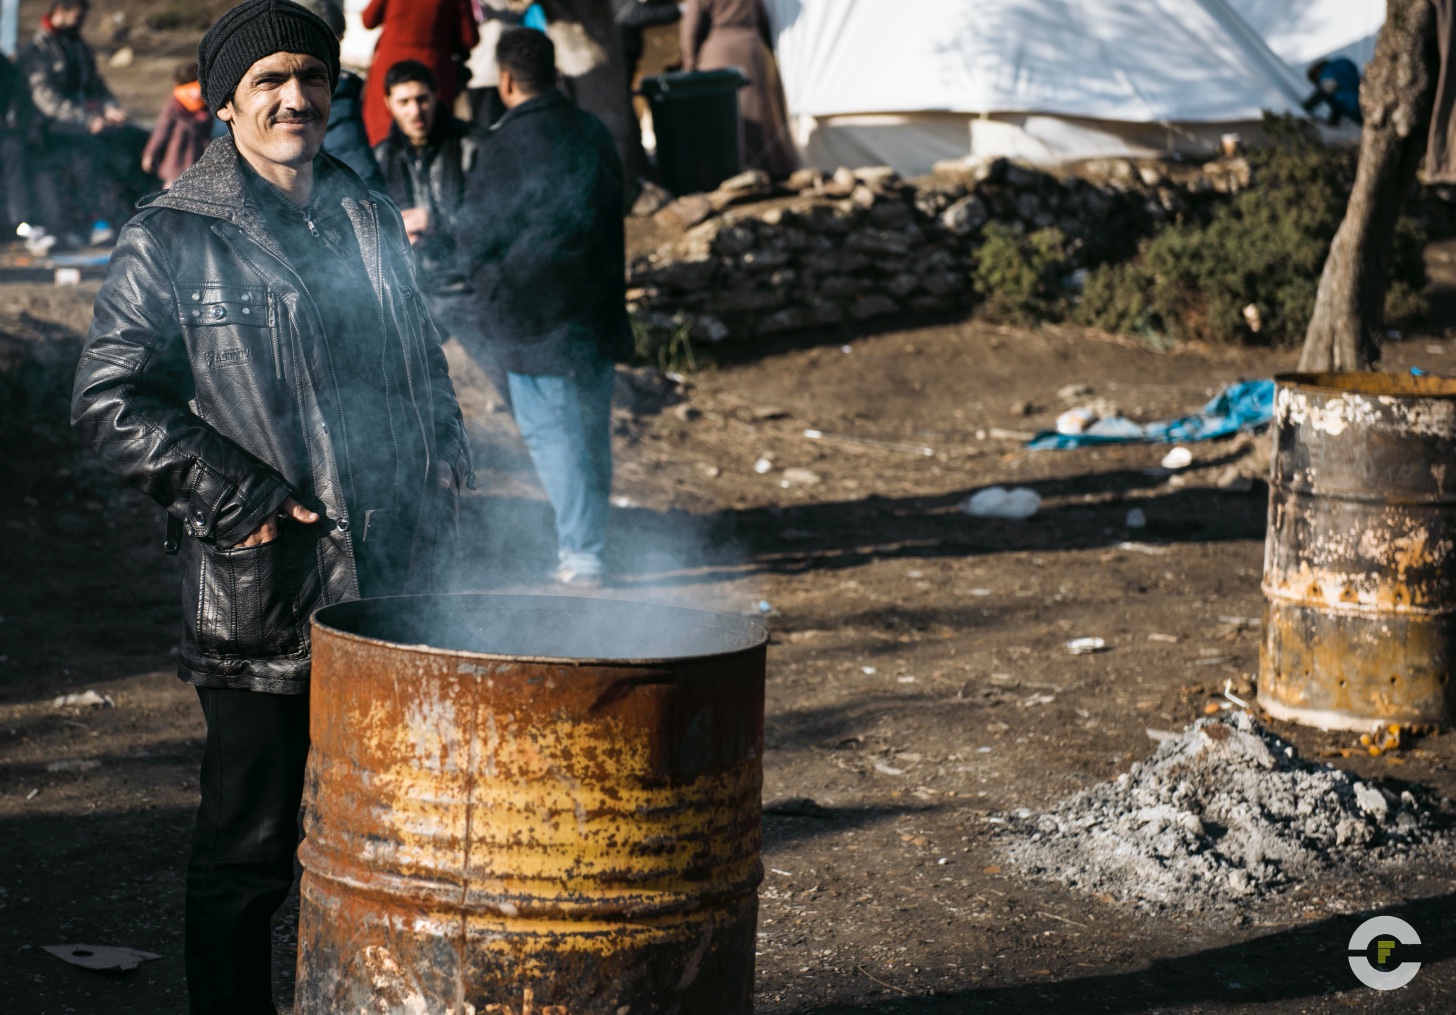 Grecia / Campo de Refugiados Mytilene / 2015 